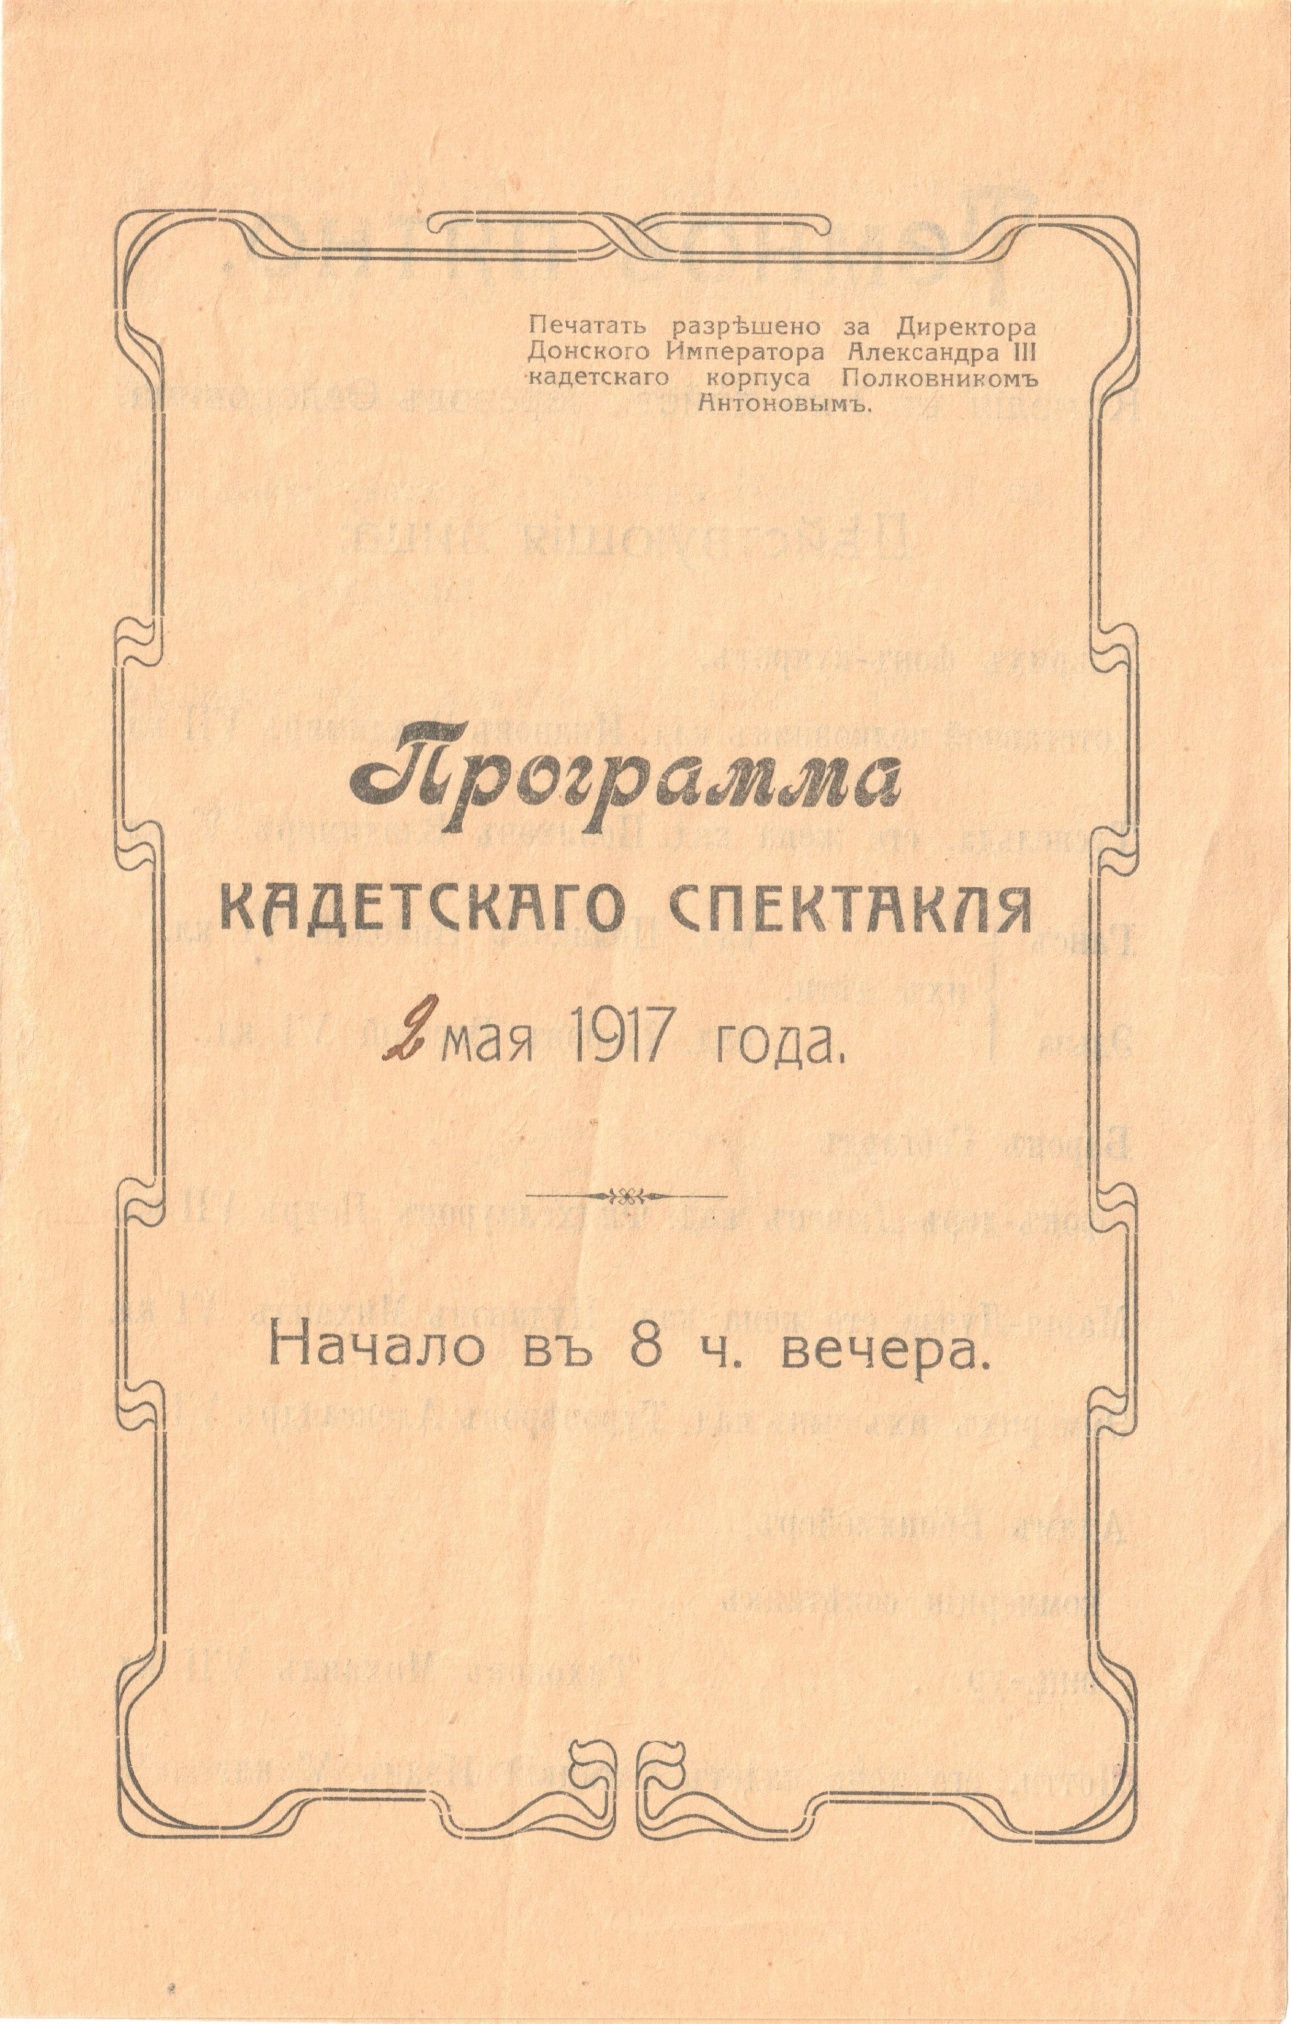 Обложка программы кадетского спектакля от 2 мая 1917 года